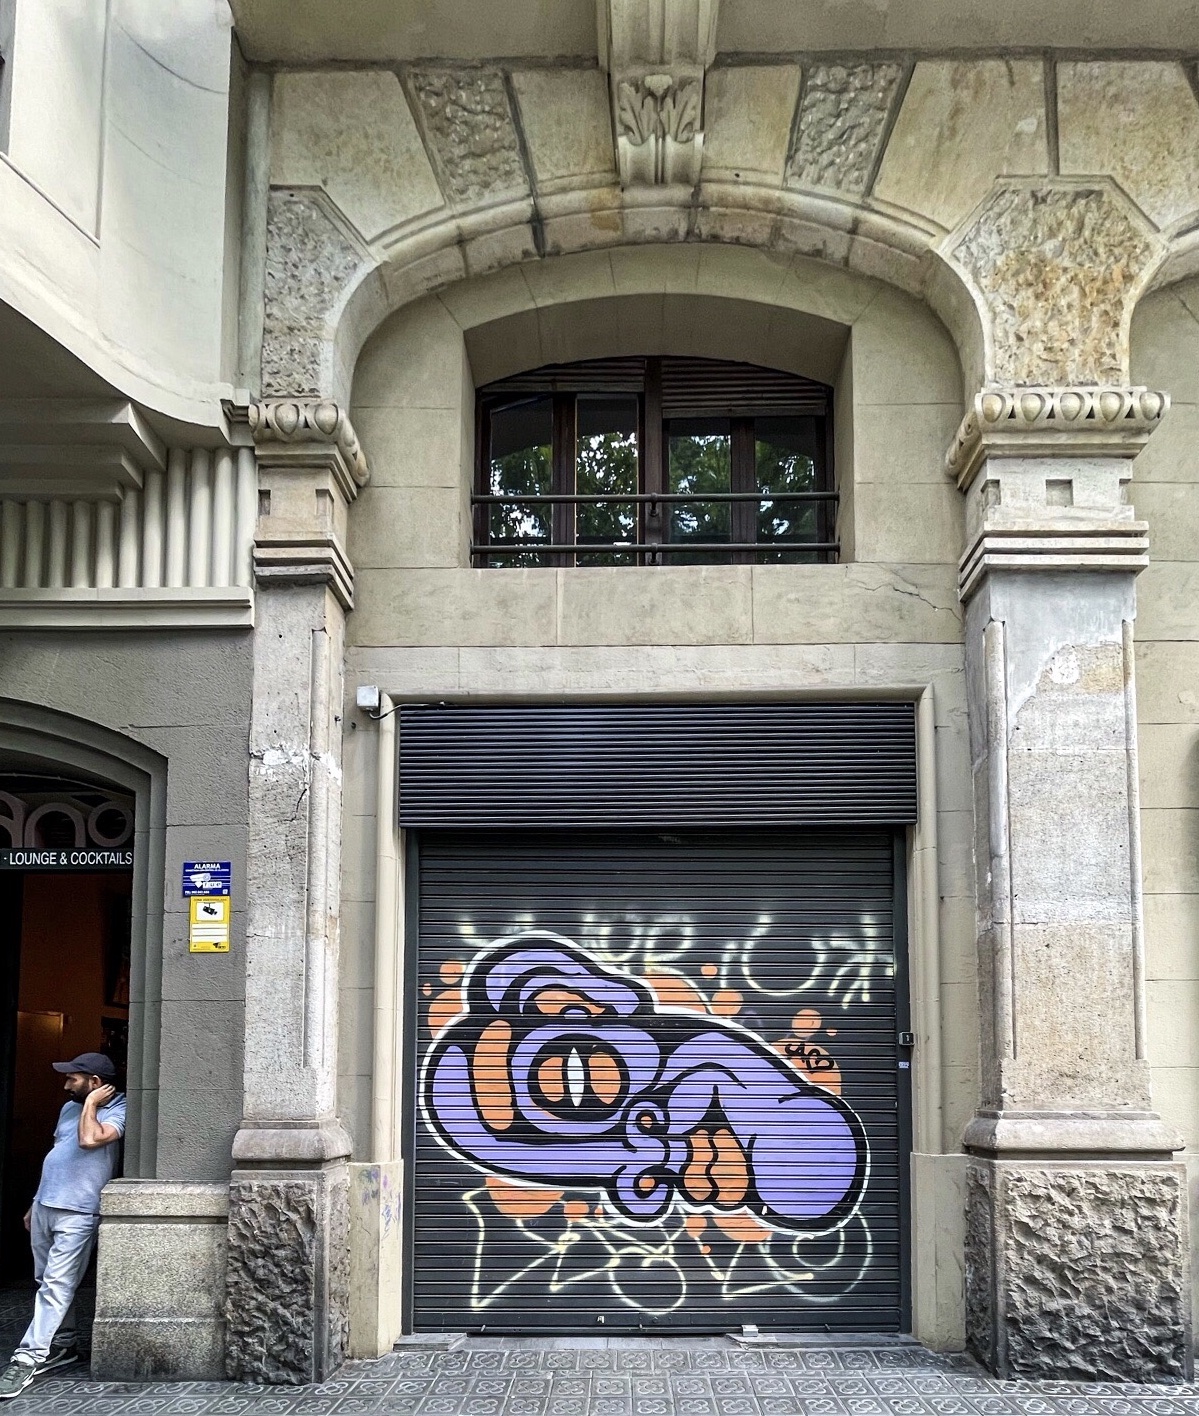 Barcelona Graffiti- matching colours